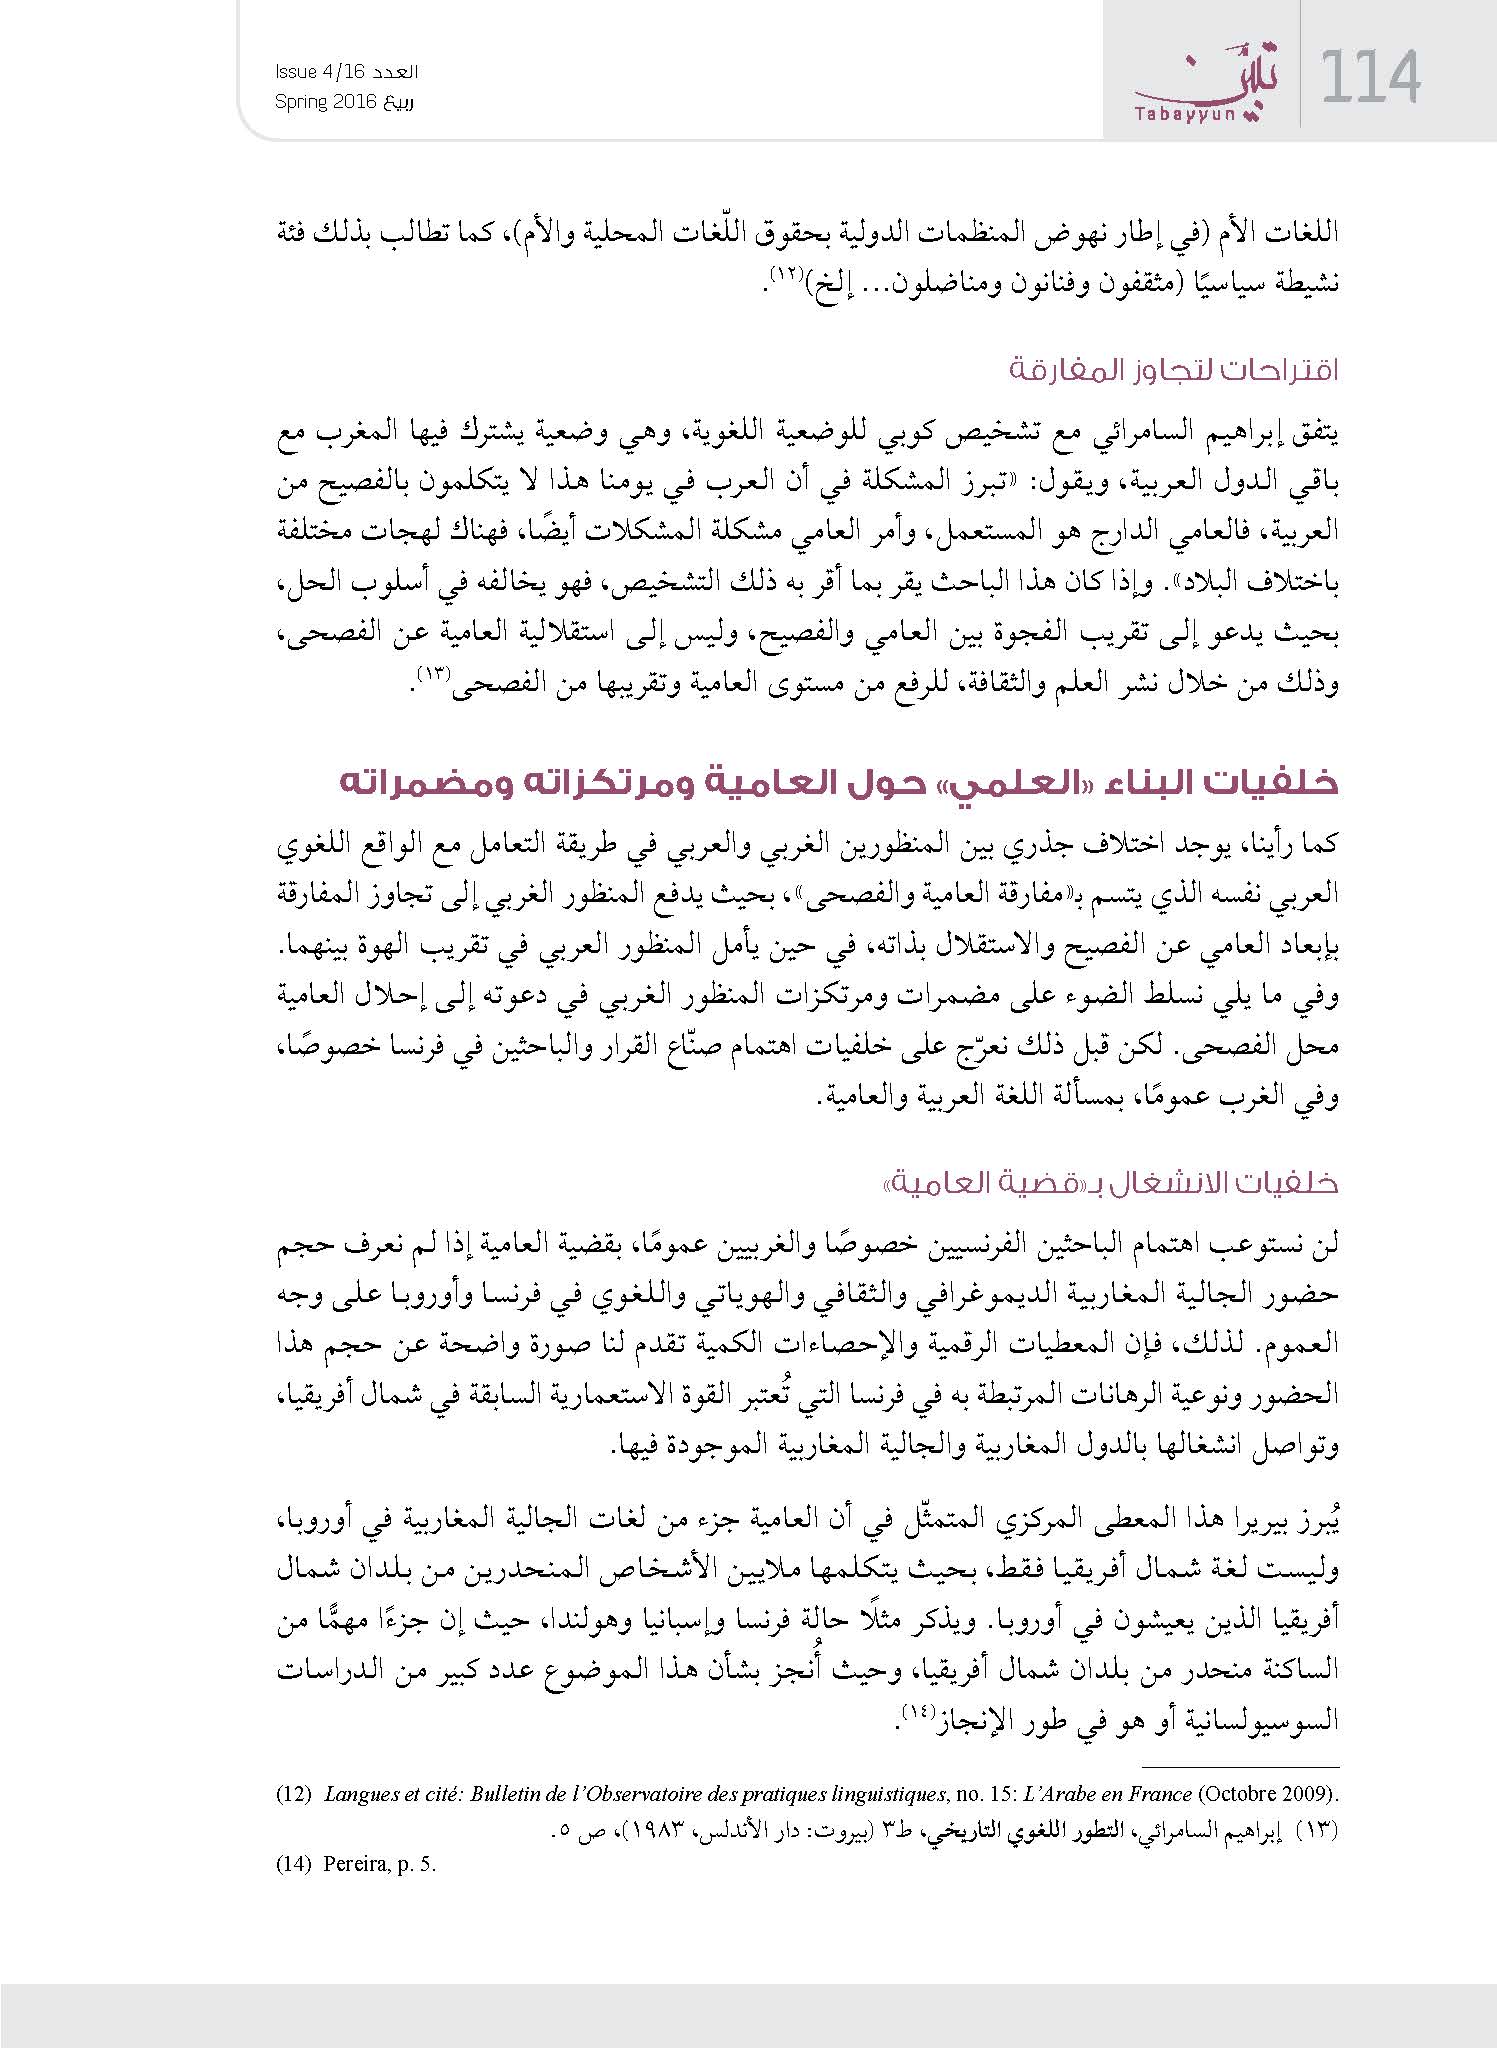 الأرشيف تبين للدراسات الفكرية والثقافية العدد 16 تاريخ الإصدار 01 مايو 2016 مقالة حدود بناء الخطاب العلمي حول العامية المغرب نموذجا